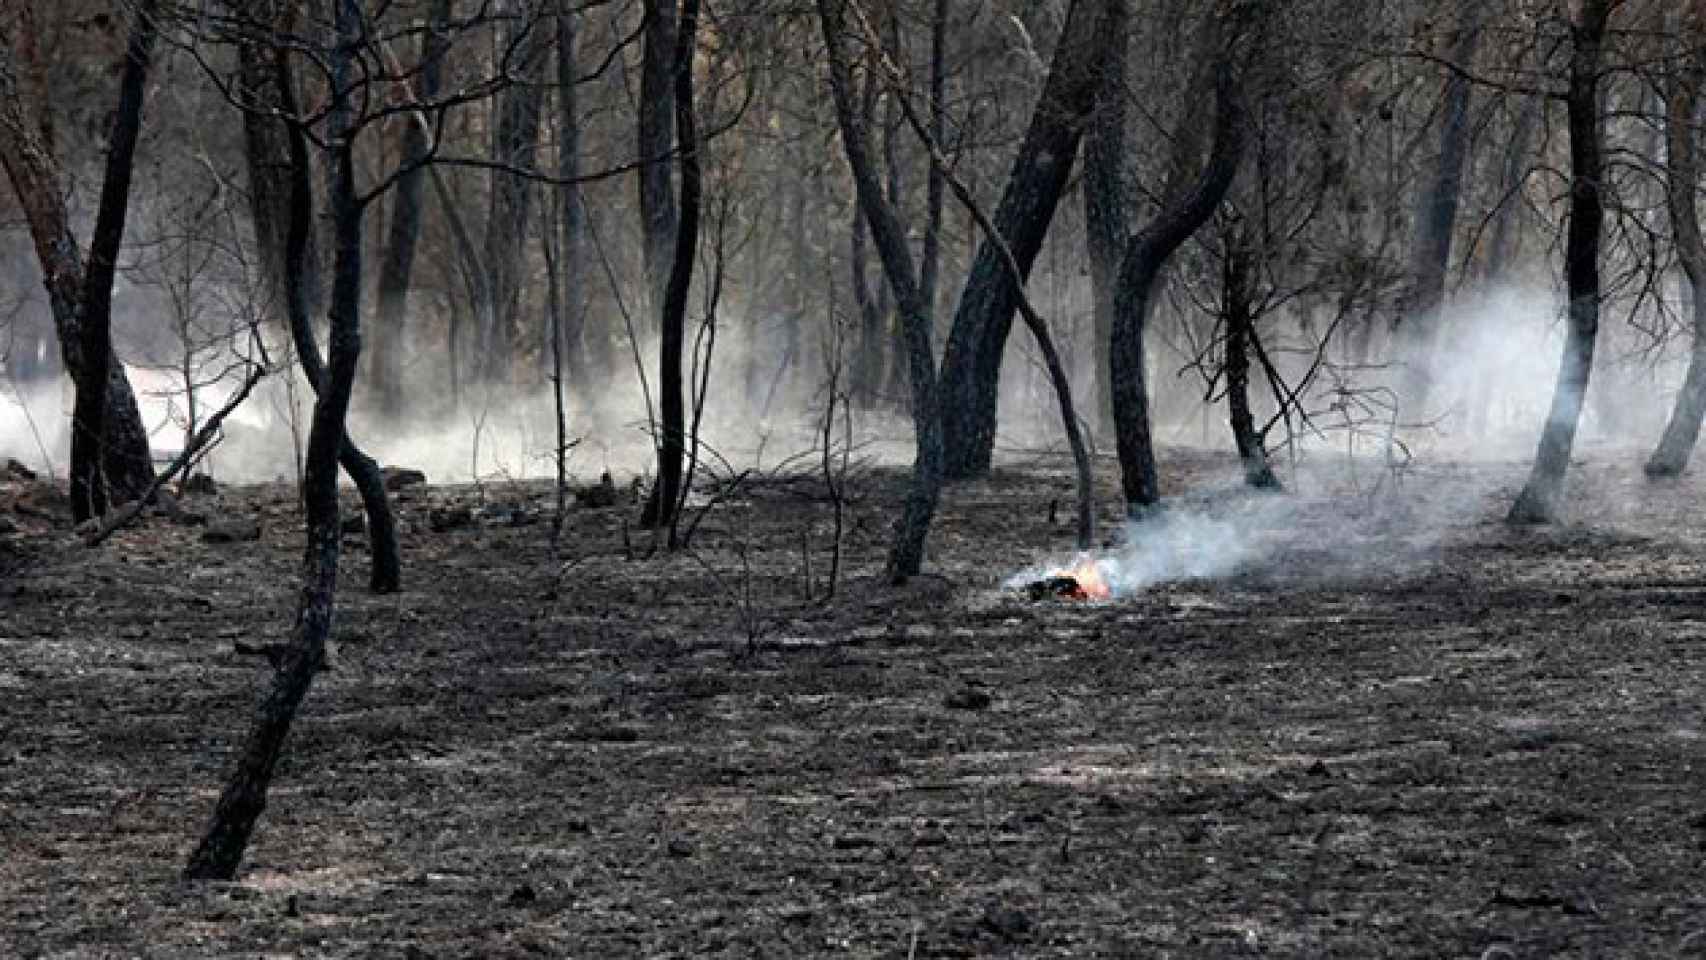 Aspecto del bosque quemado en la zona de la Masia El Freixe, como consecuencia del incendio forestal declarado ayer en el municipio de Artés / EFE